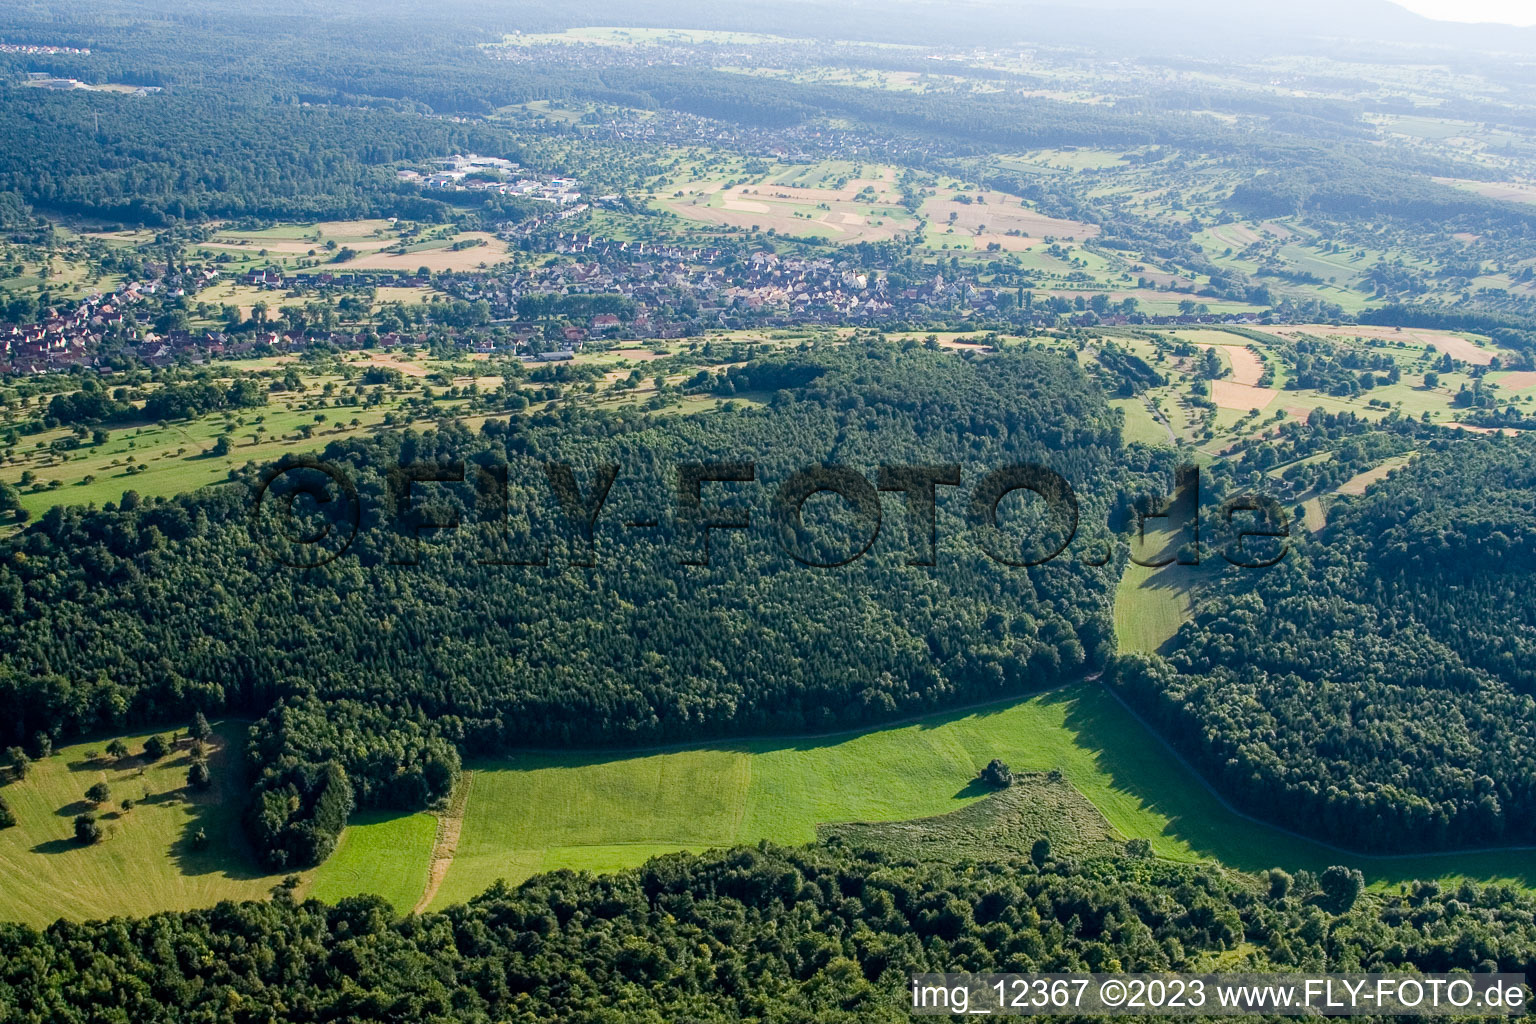 Réserve naturelle de Kettelbachtal à Gräfenhausen dans le département Bade-Wurtemberg, Allemagne vu d'un drone